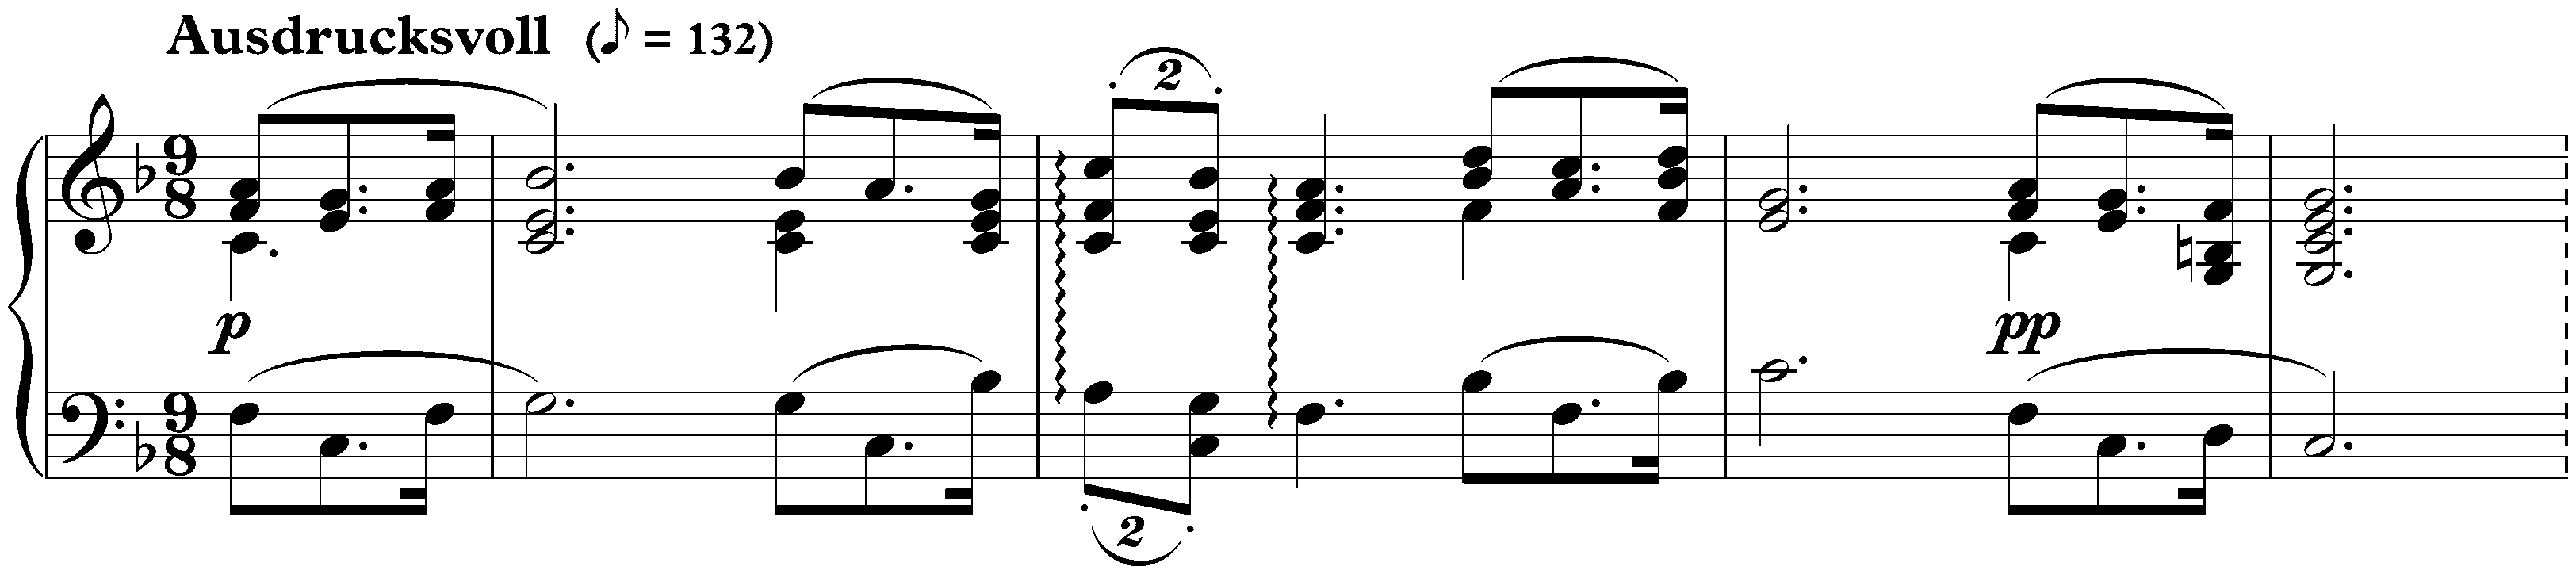 Sonate für die Jugend in C major, op. 118 no. 3; 2. Ausdrucksvoll